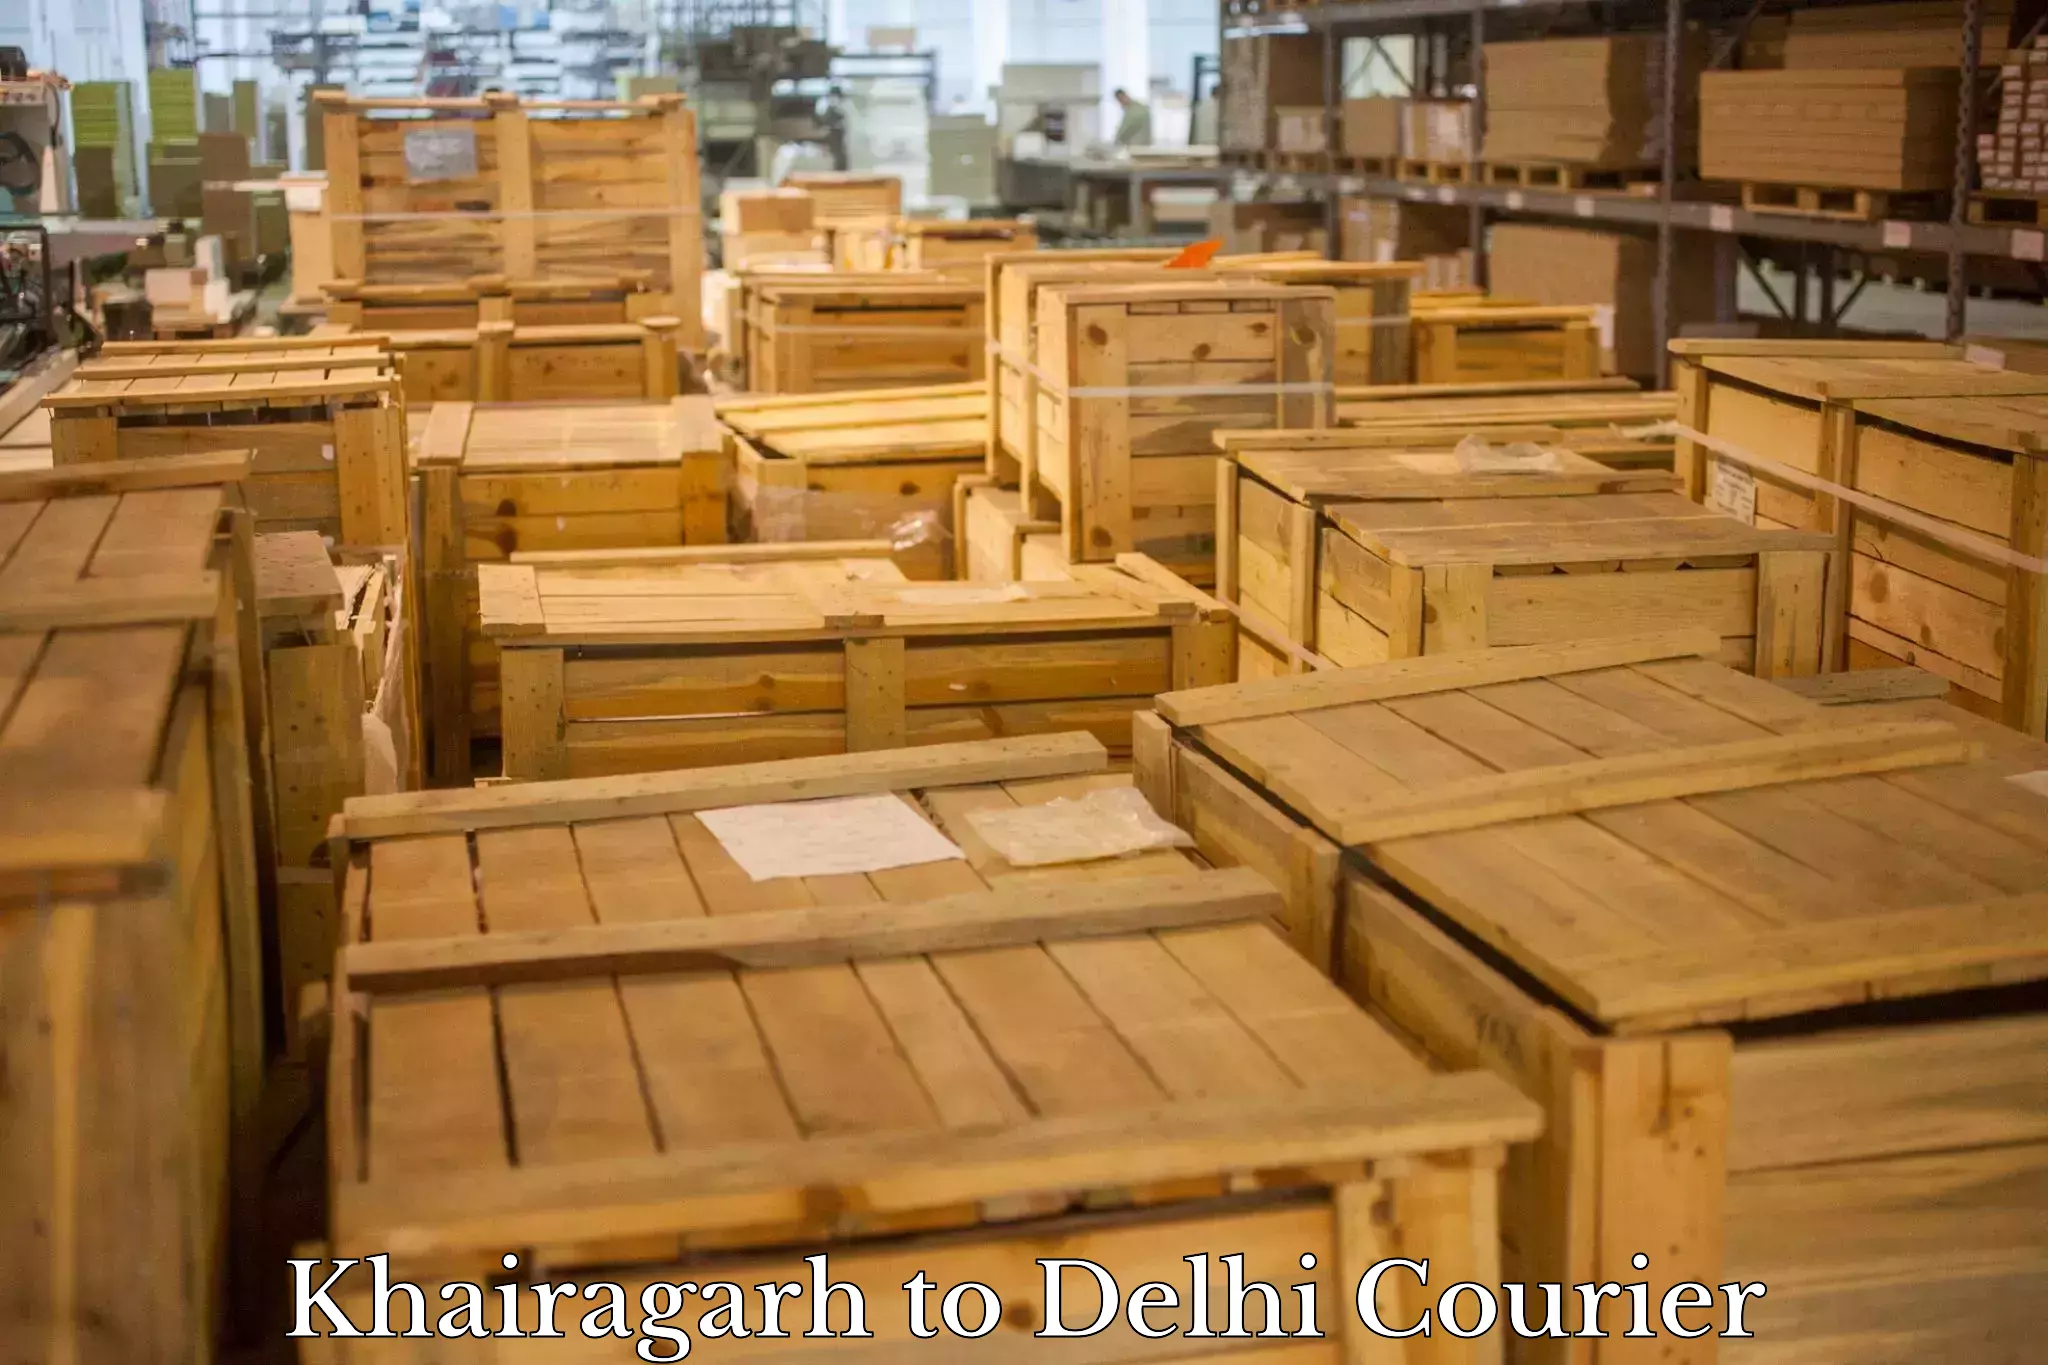 Efficient freight service Khairagarh to Delhi